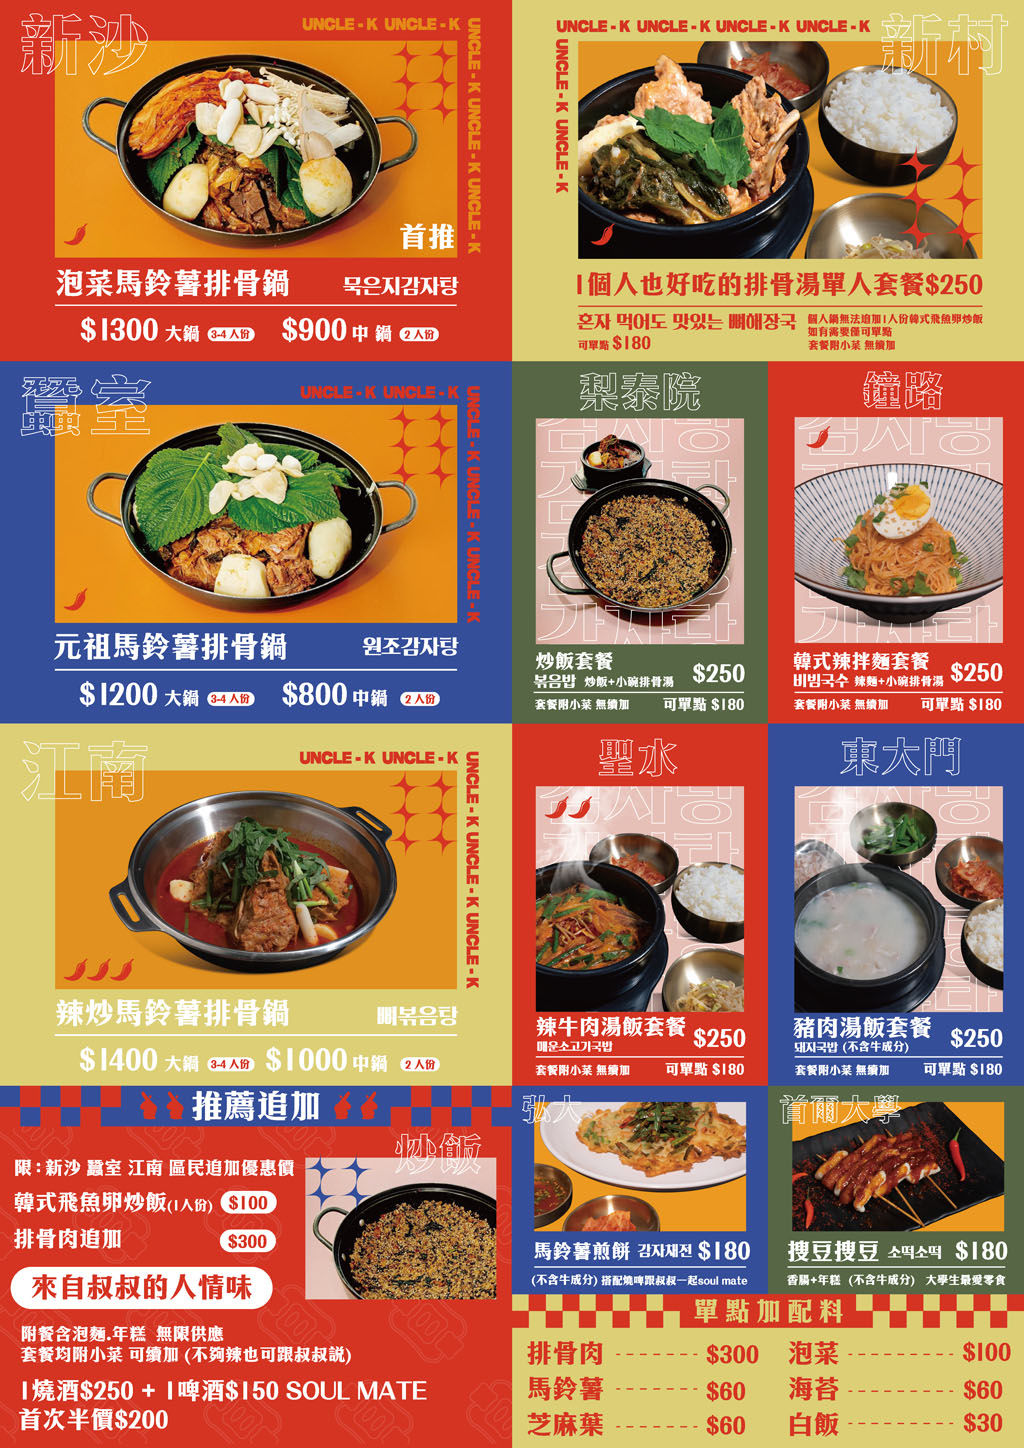 UNCLE-K馬鈴薯排骨火鍋店，台北終於有道地的馬鈴薯排骨鍋啦！😍